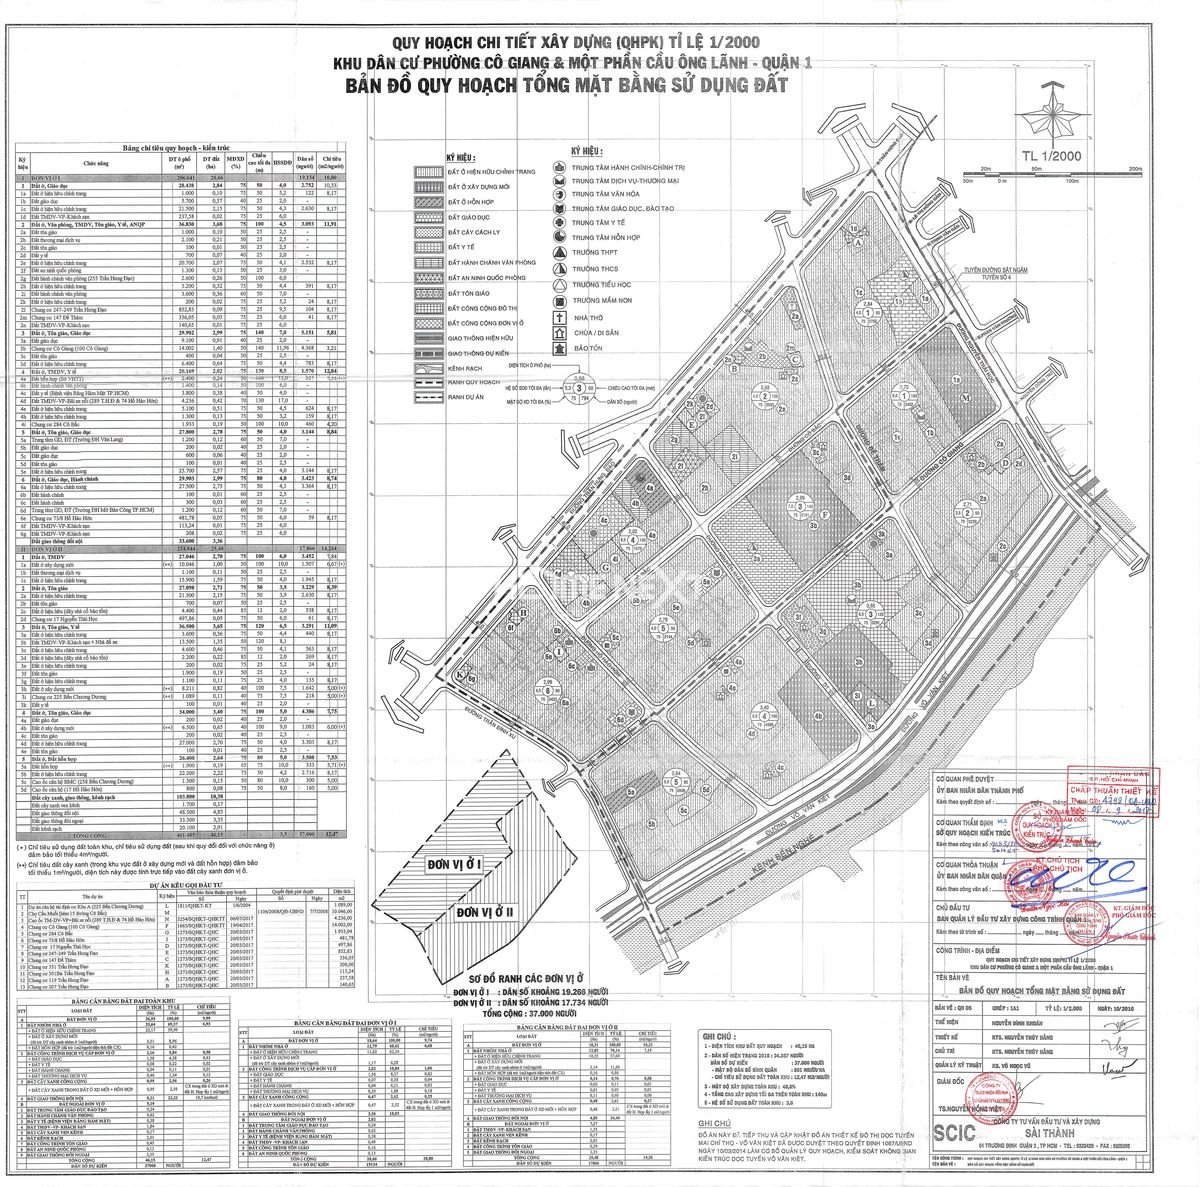 Bản đồ quy hoạch sử dụng đất 1/2000 phường Cô Giang và một phần cầu Ông Lãnh quận 1